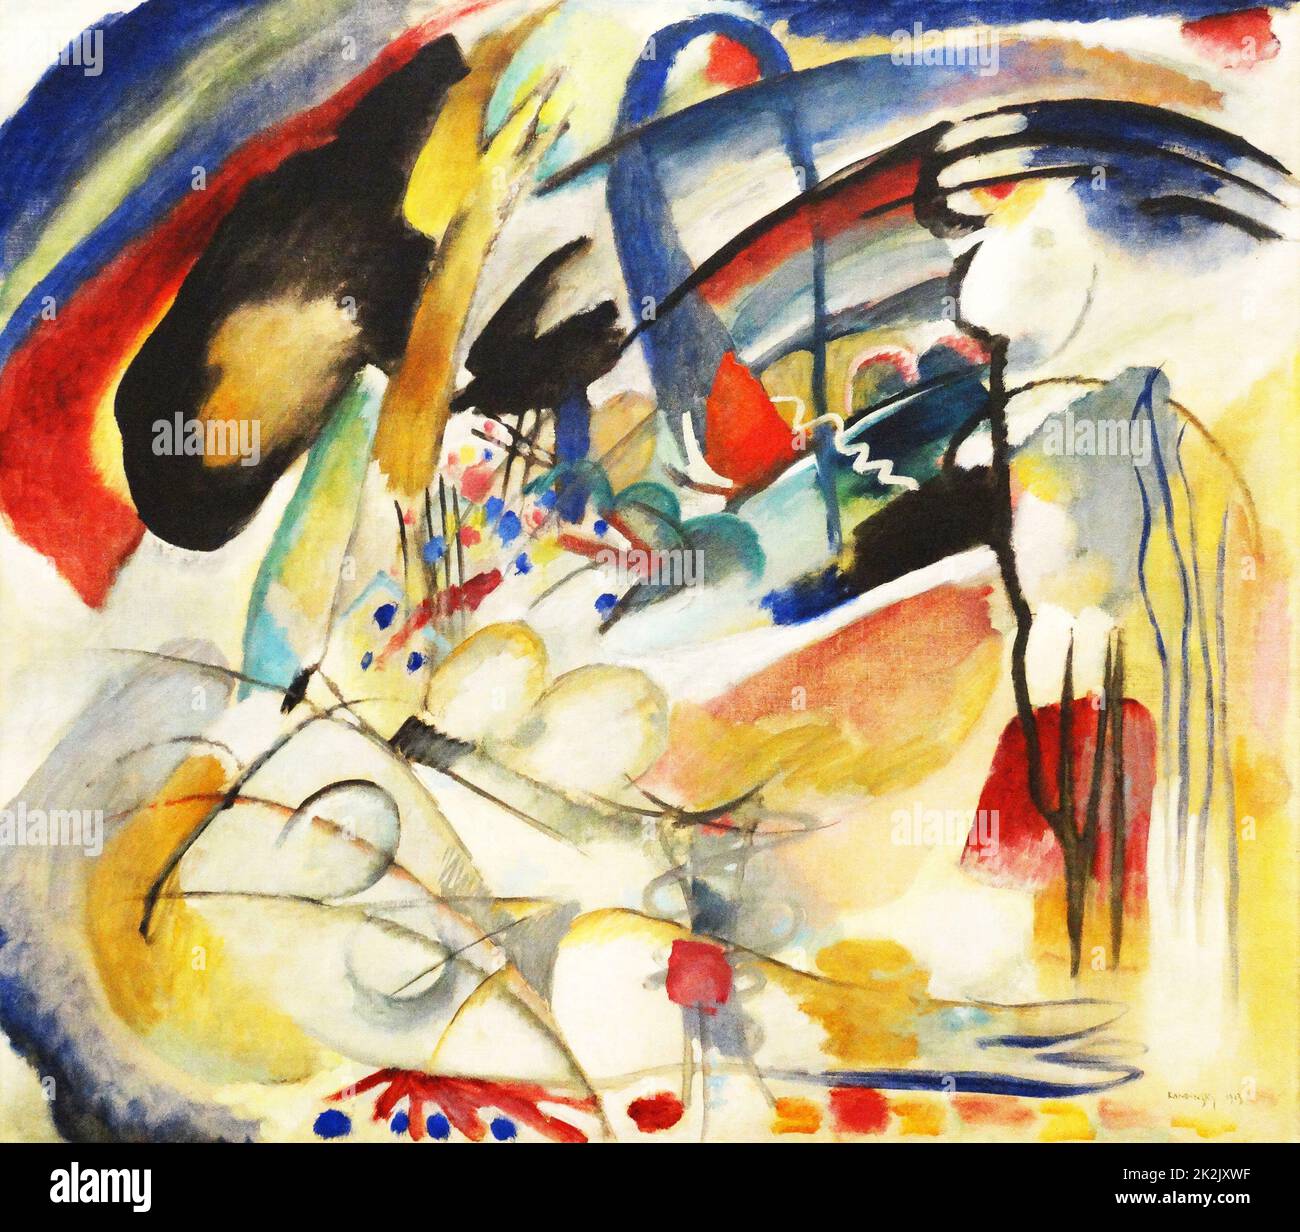 Improvisation 33 (Orient 1) (Öl auf Leinwand, 88 x 100 cm) von Wassily Kandinsky (1866-1944), einem einflussreichen russischen Maler und Kunsttheoretiker. Ihm wird die Malerei der ersten rein abstrakten Werke zugeschrieben. Stockfoto